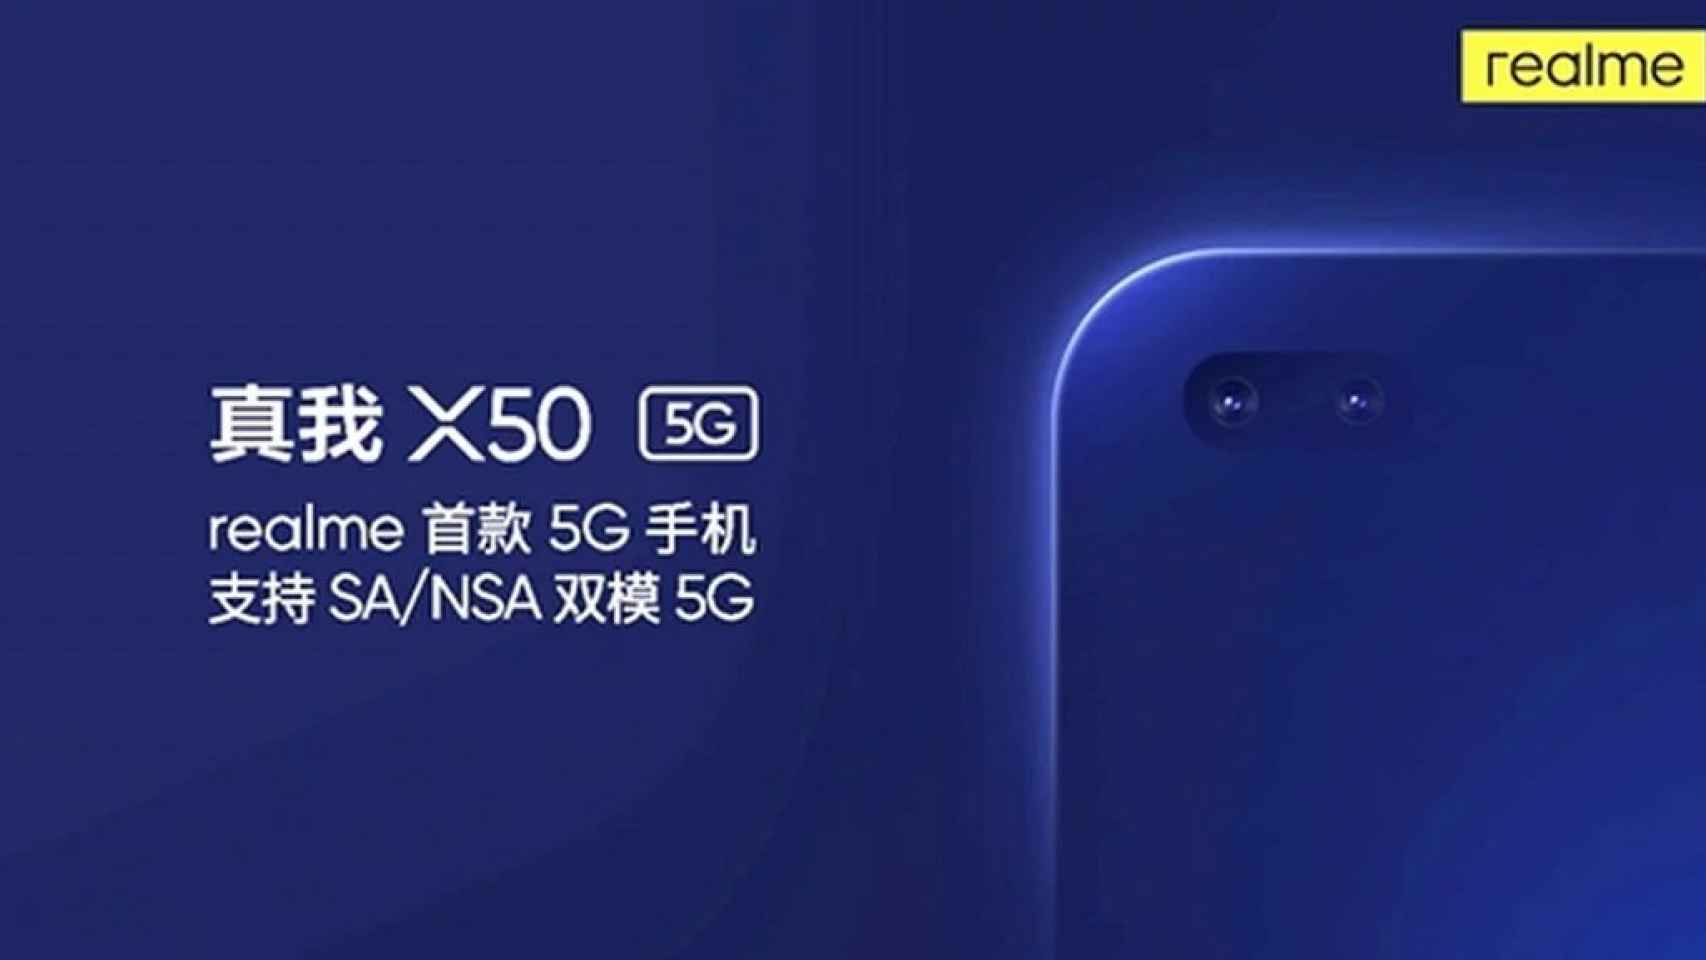 Las características completas del realme X50 5G se han filtrado